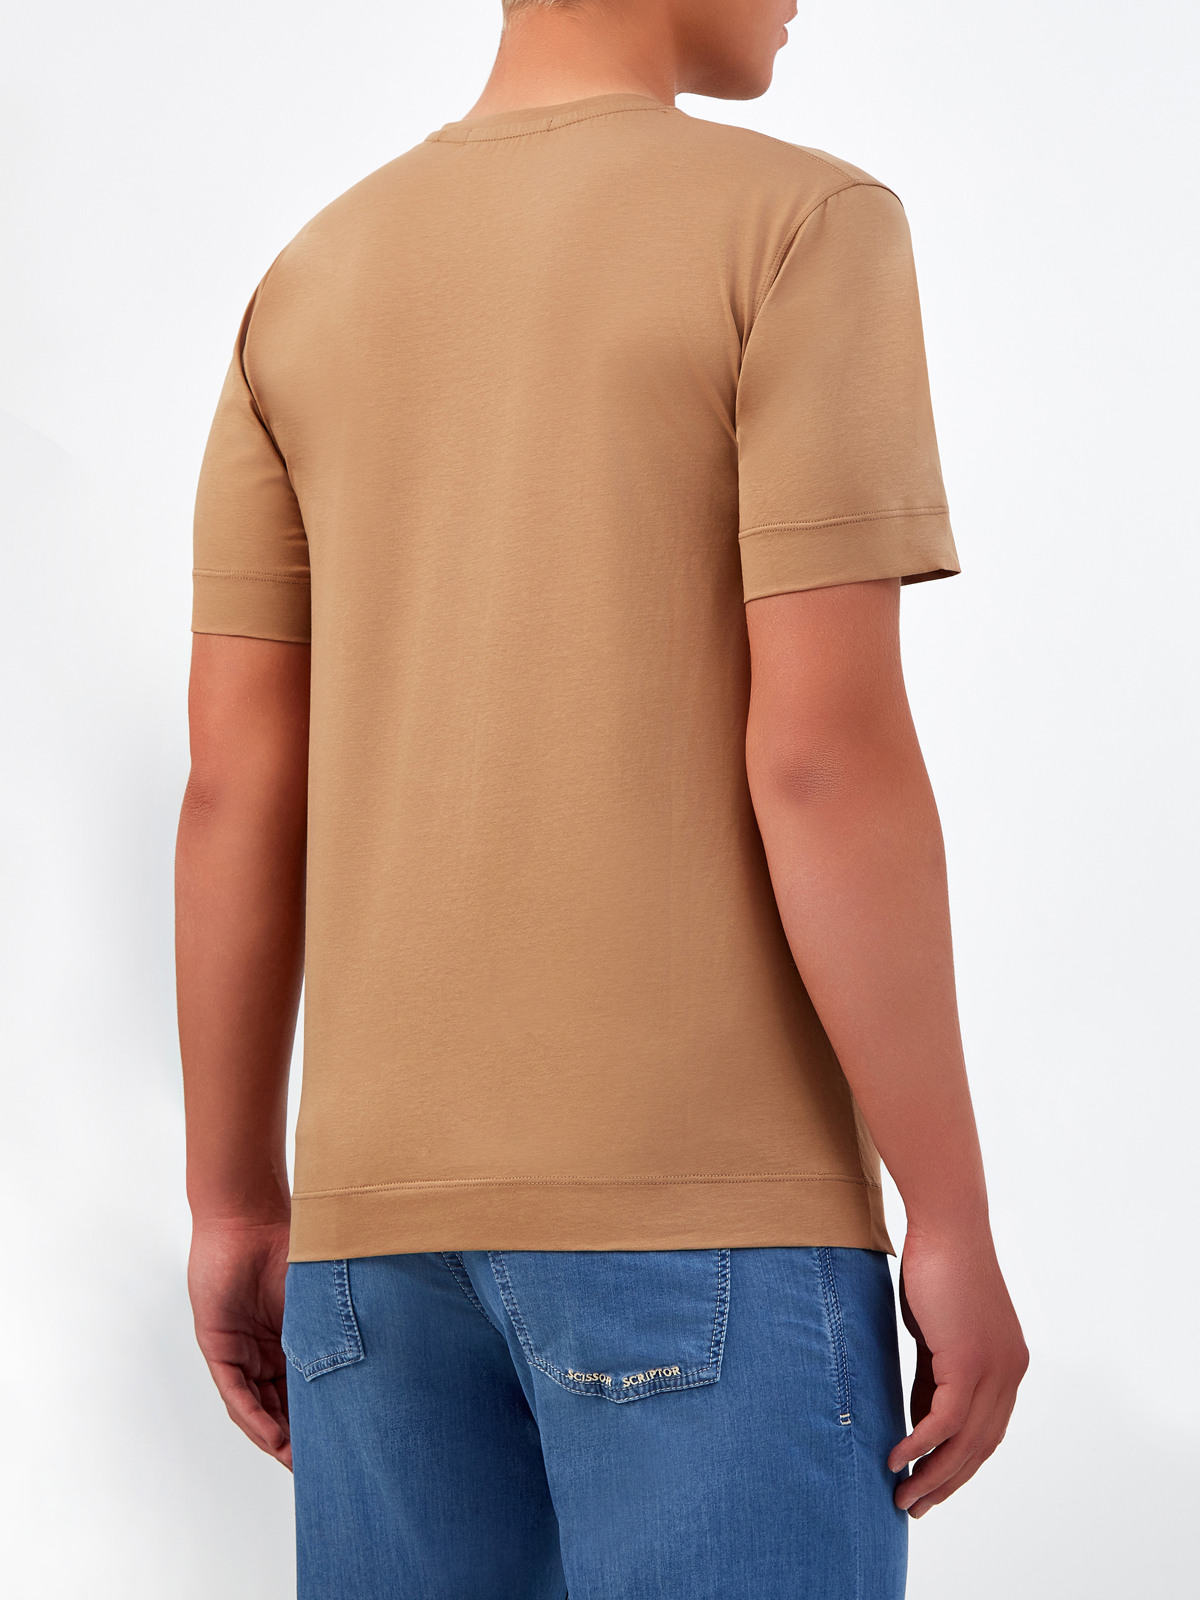 Хлопковая футболка с нашивкой и двойной прострочкой CUDGI, цвет коричневый, размер 50;52;54;56;48 - фото 4